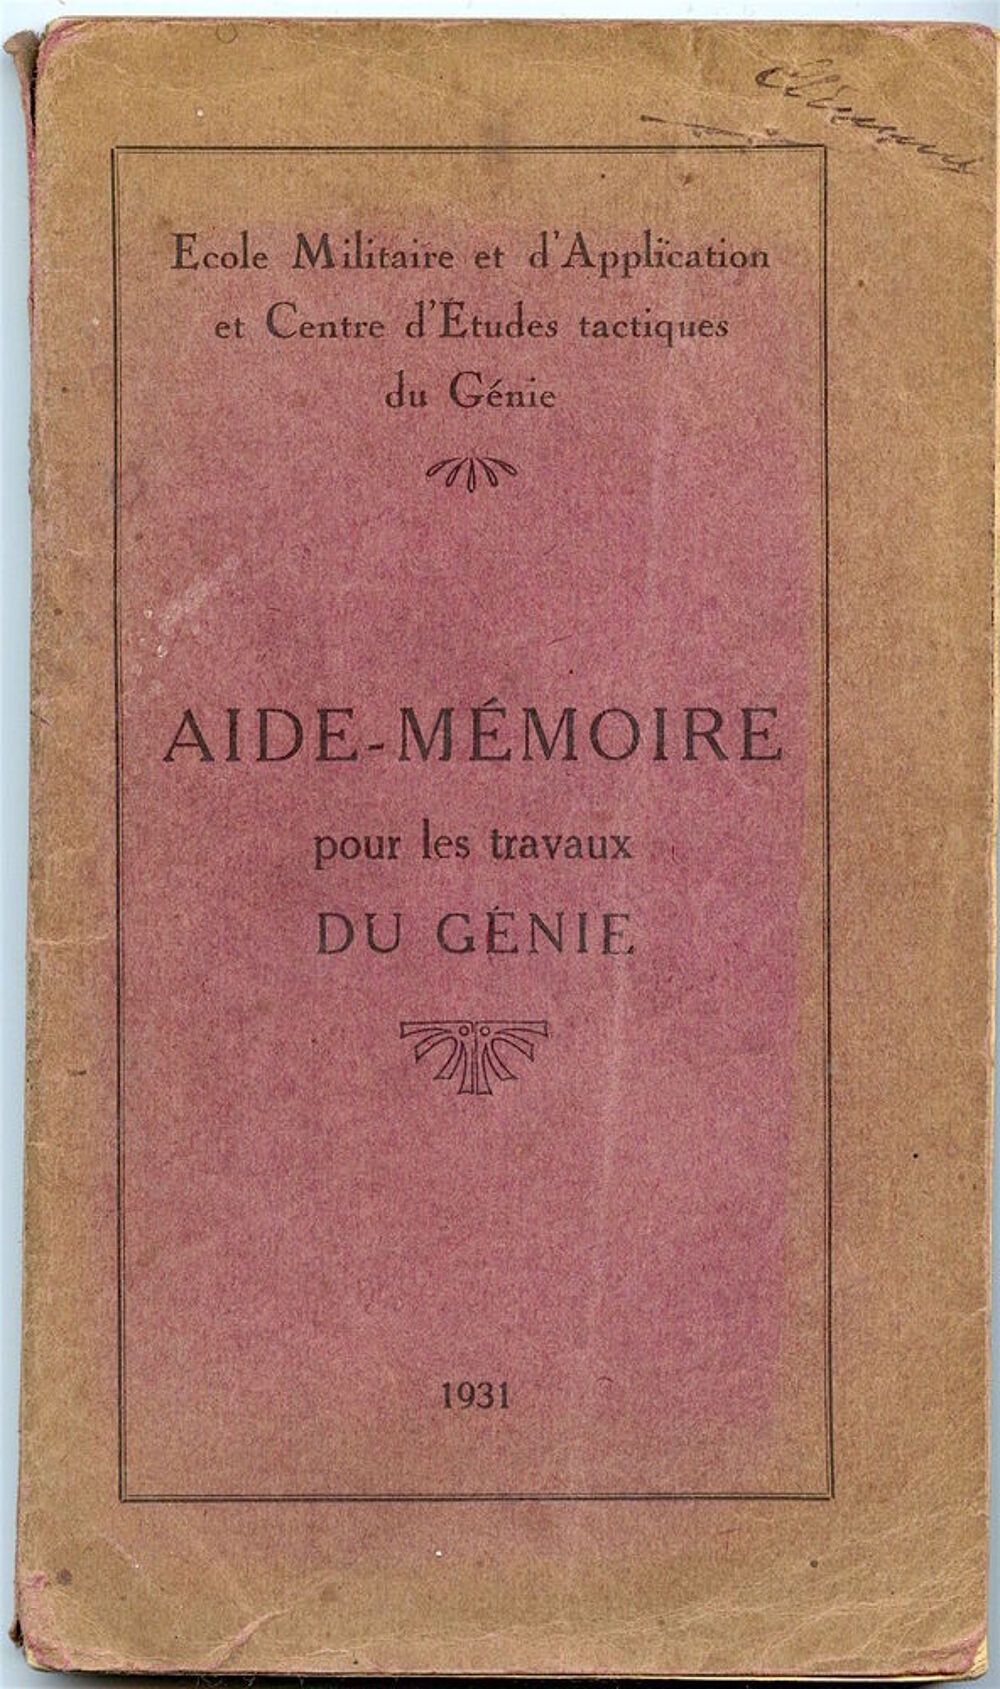 Aide-M&eacute;moire pour les travaux du G&eacute;nie.
1931 Livres et BD